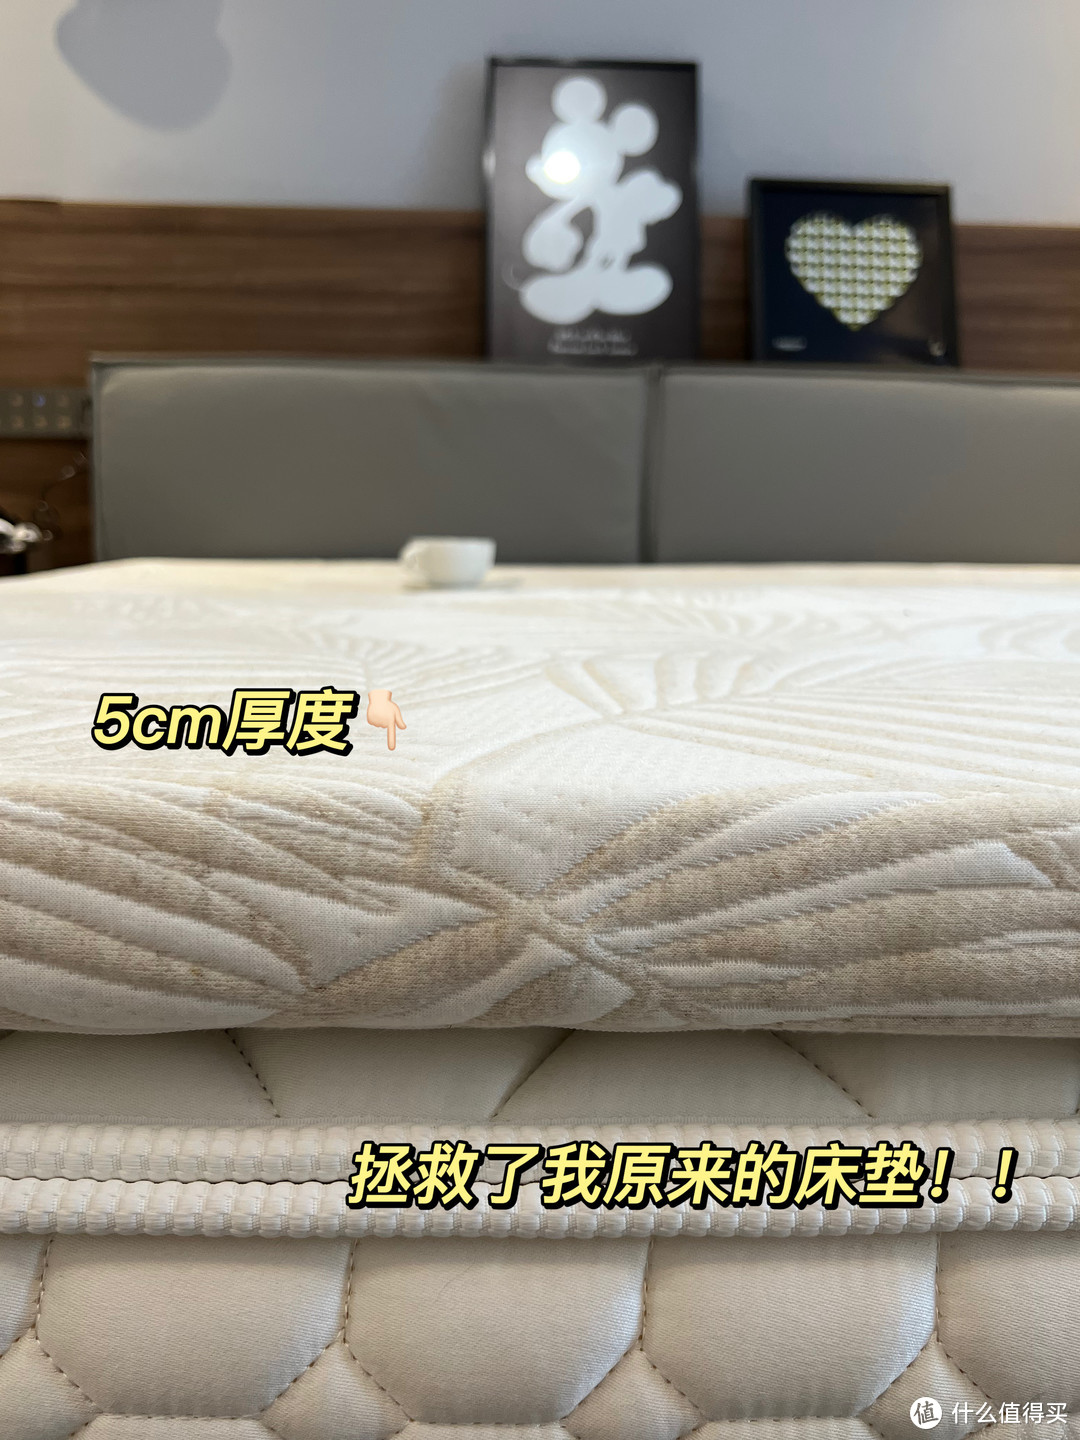 苏老伯泰国进口乳胶床垫 带有钢印才是真乳胶